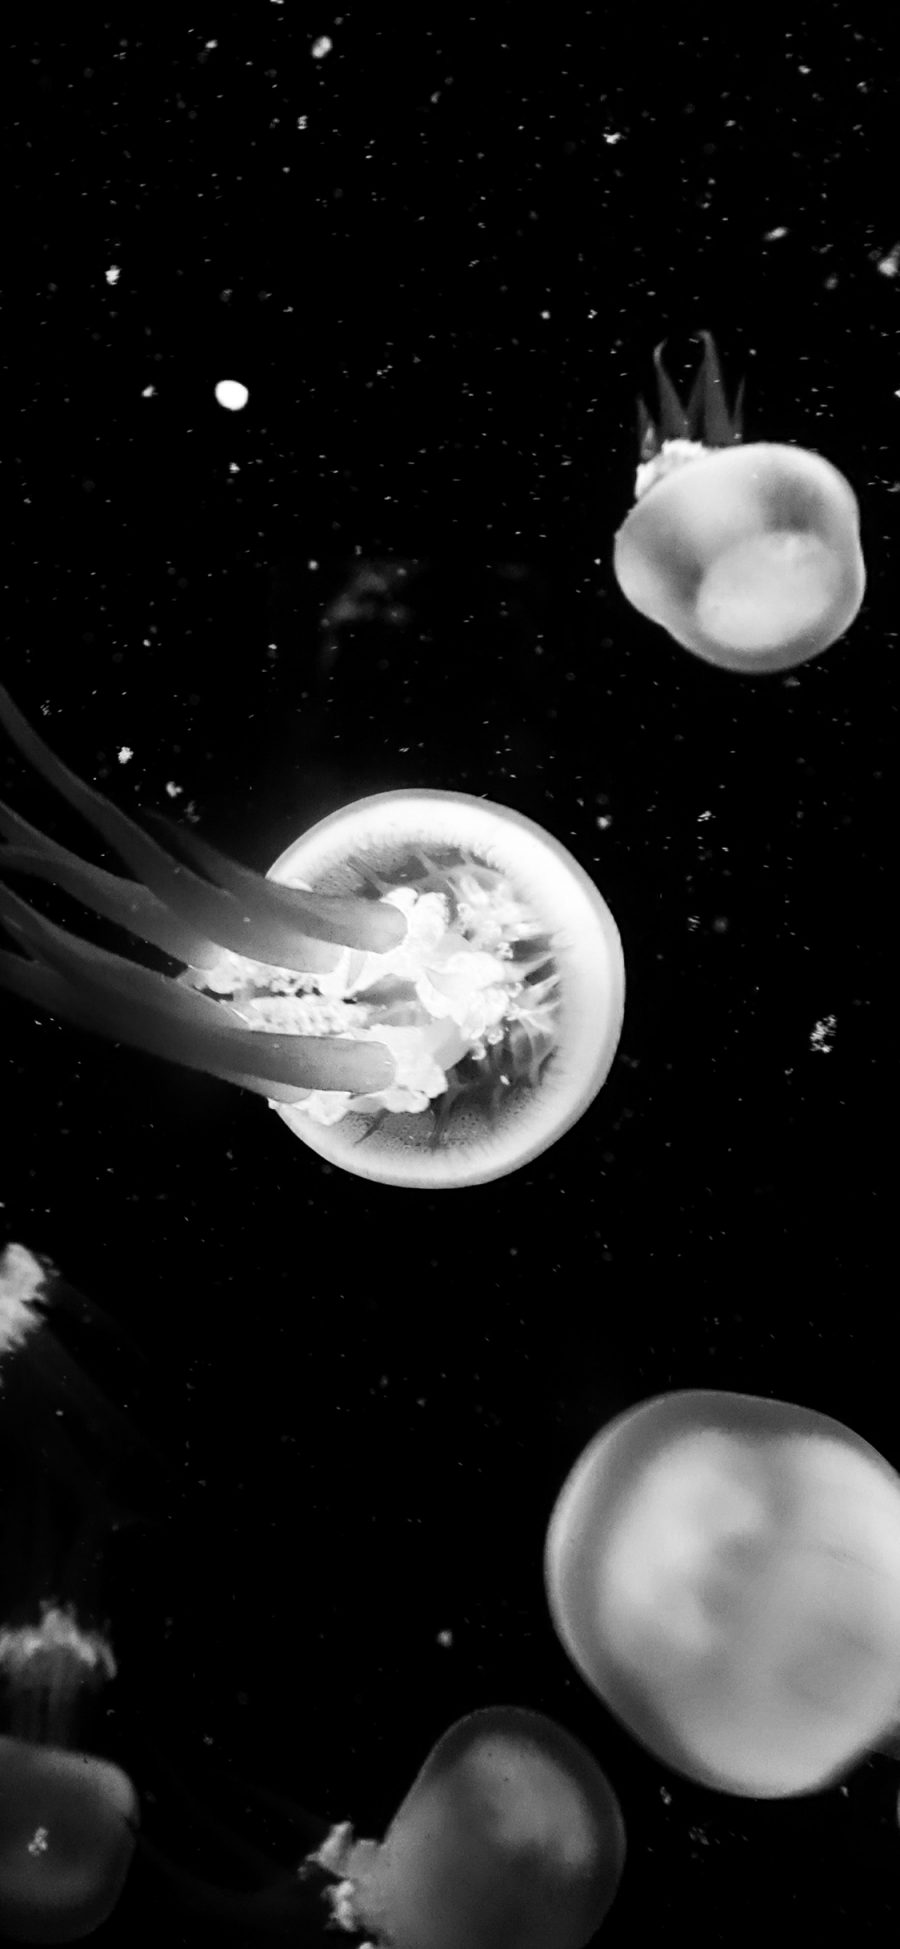 [2436×1125]水母 黑白 浮游 生物 触手 苹果手机壁纸图片